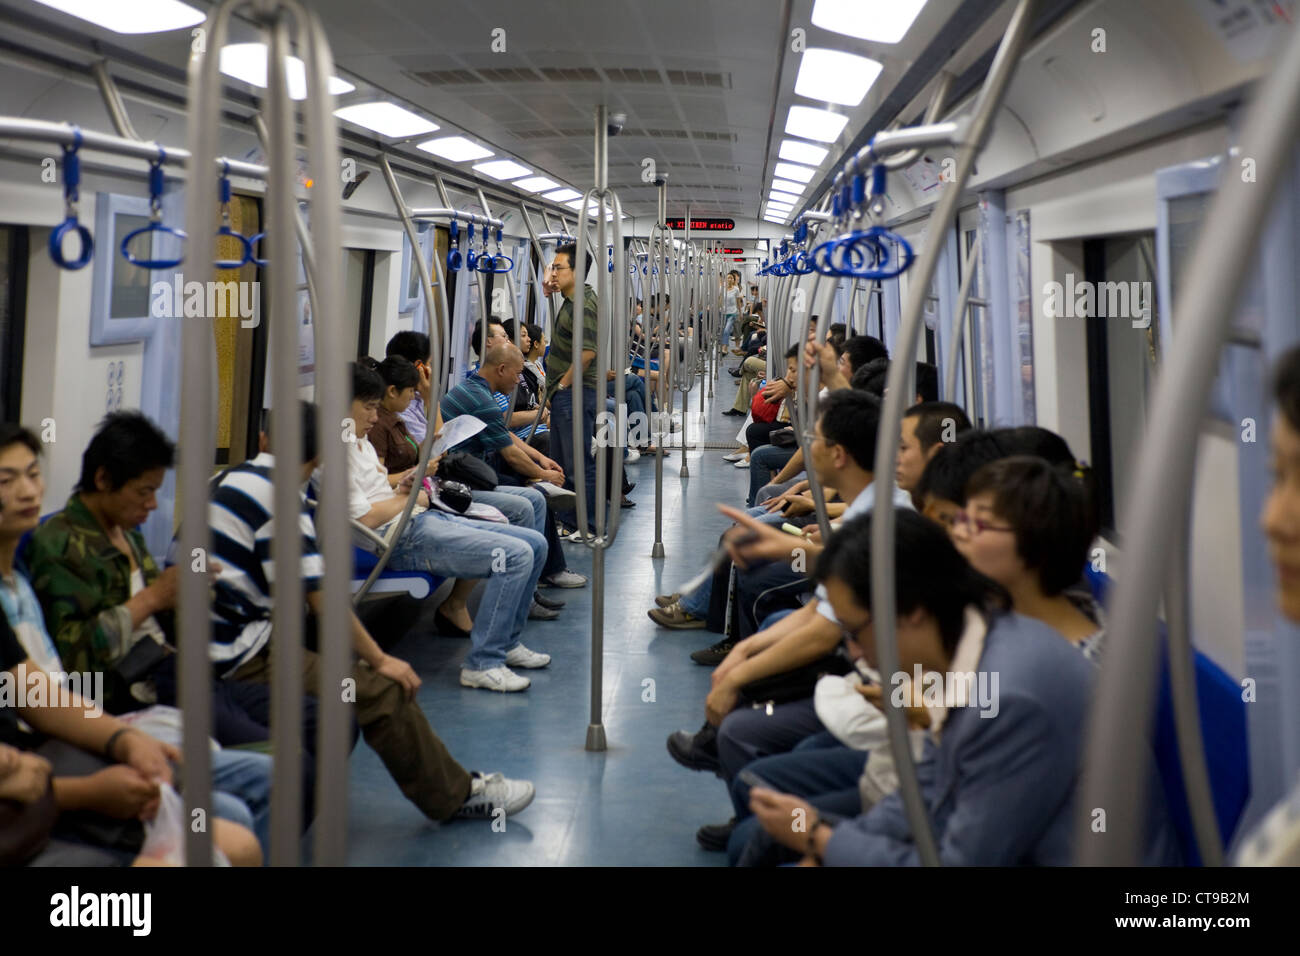 À l'intérieur du tube de métro train avec compartiment voyageurs chinois de banlieue / passagers. Système souterrain. Beijing, Chine Banque D'Images